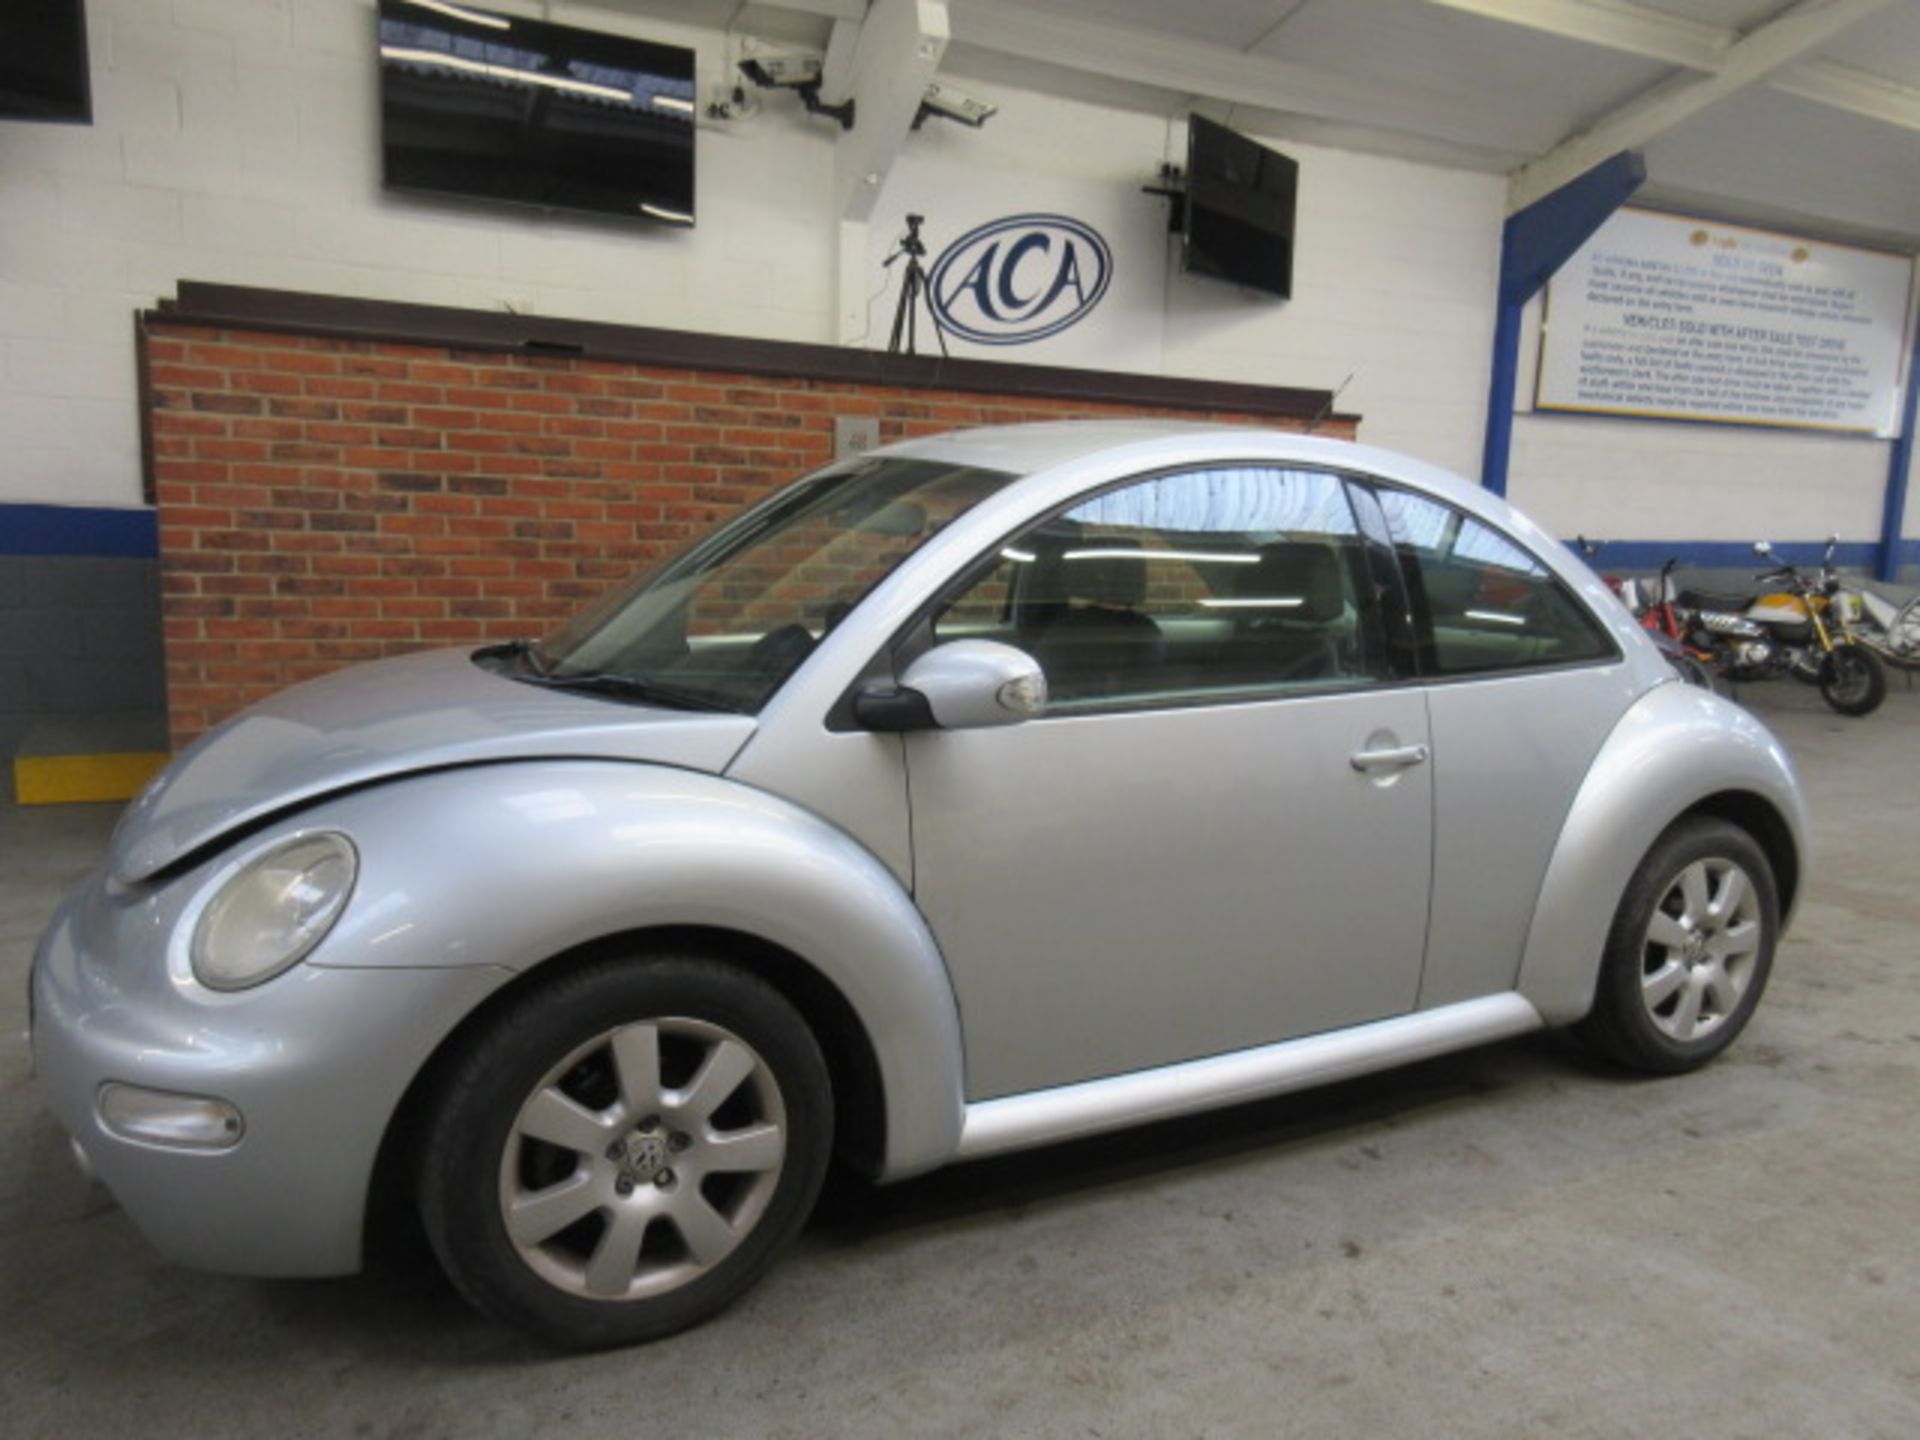 04 04 VW Beetle